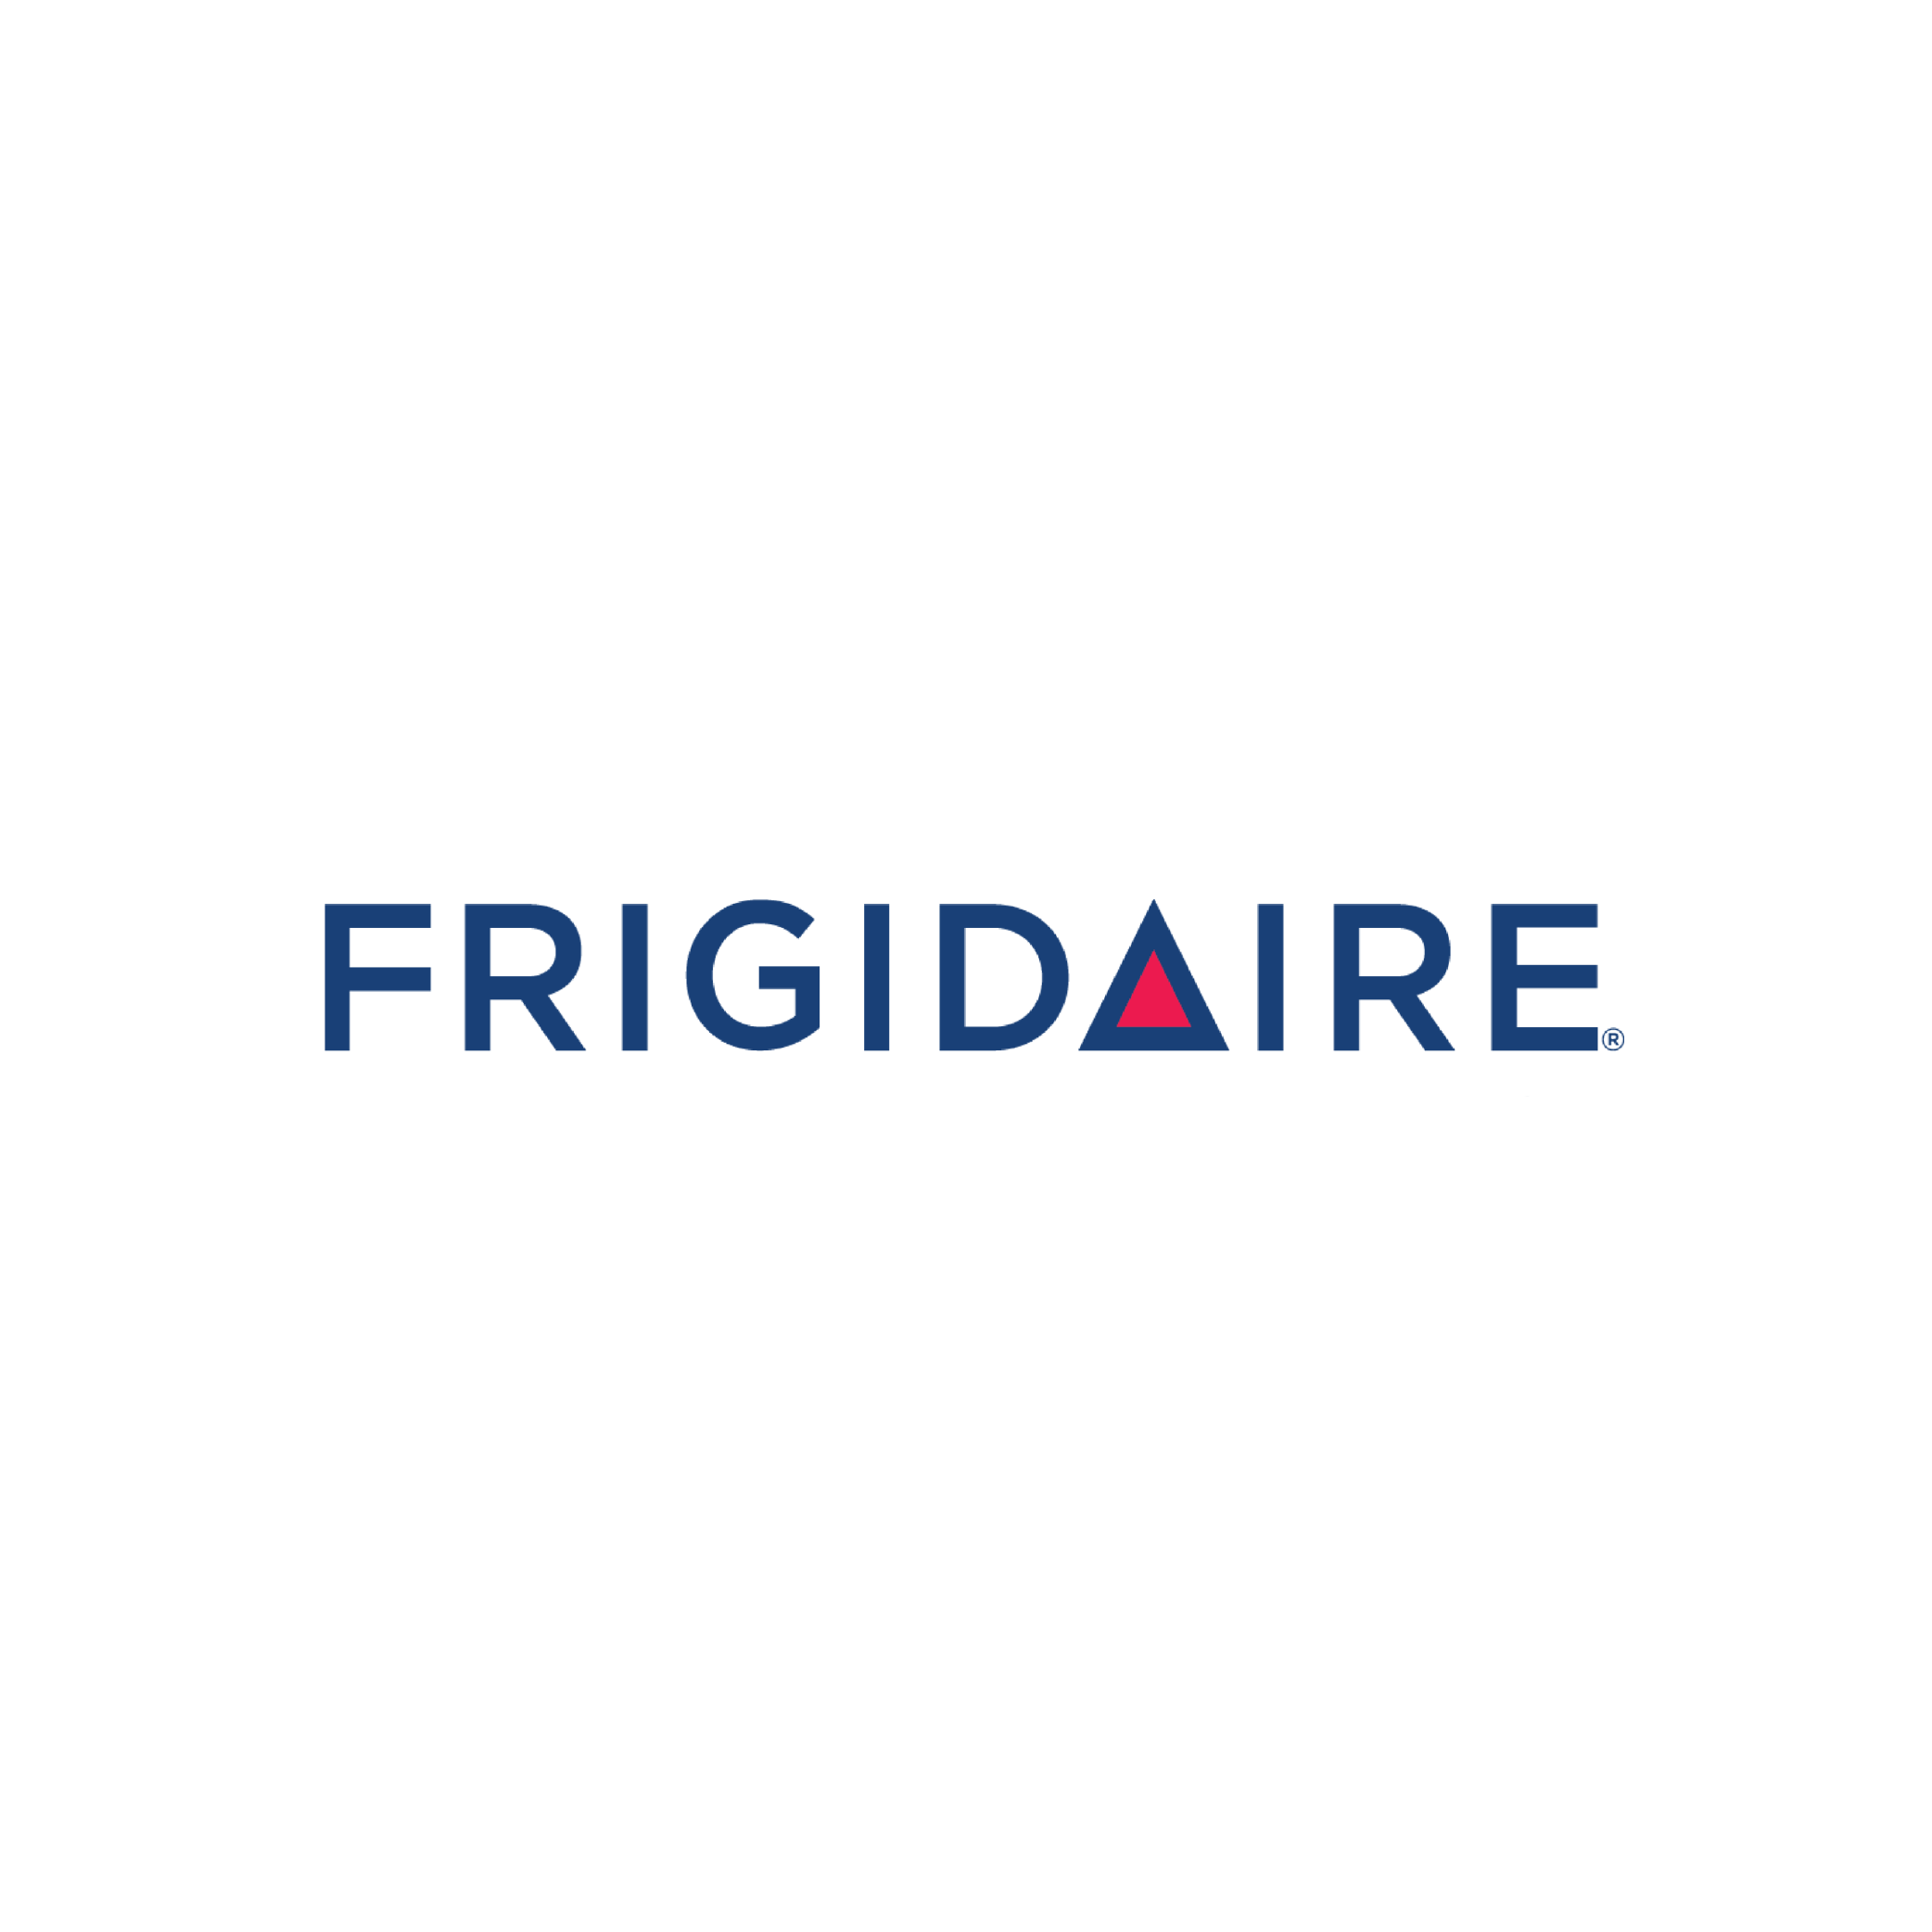  Frigidaire Appliances Logo 